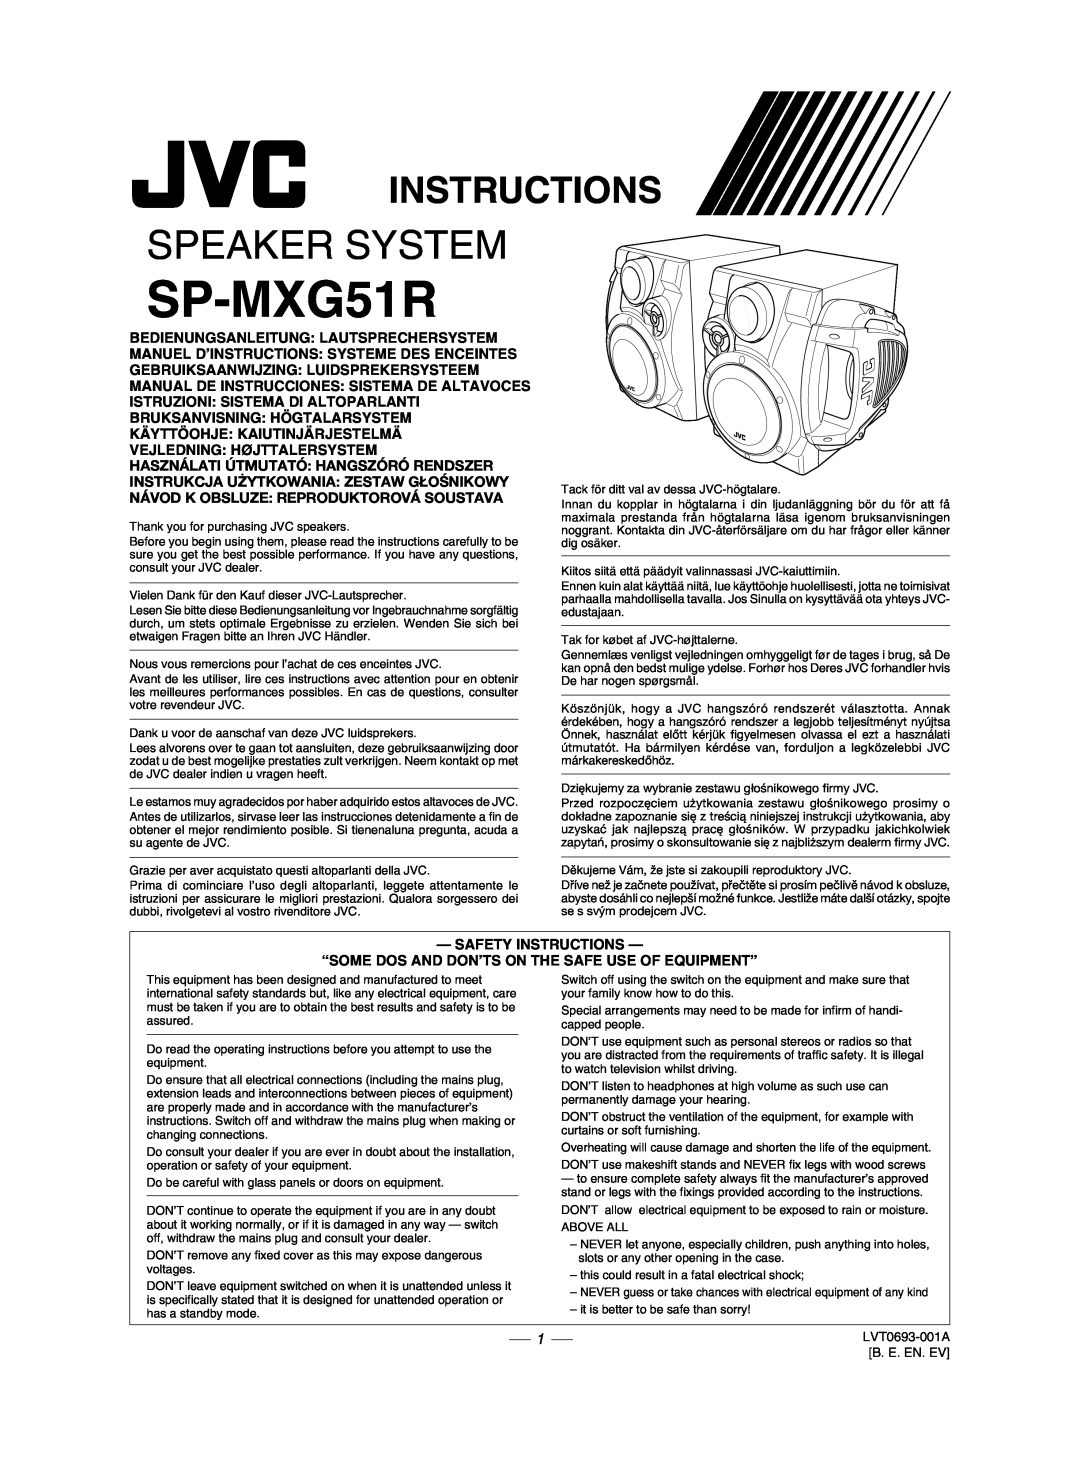 JVC CA-MXG51R manual Instructions, SP-MXG51R, Speaker System, Használati Útmutató Hangszóró Rendszer 